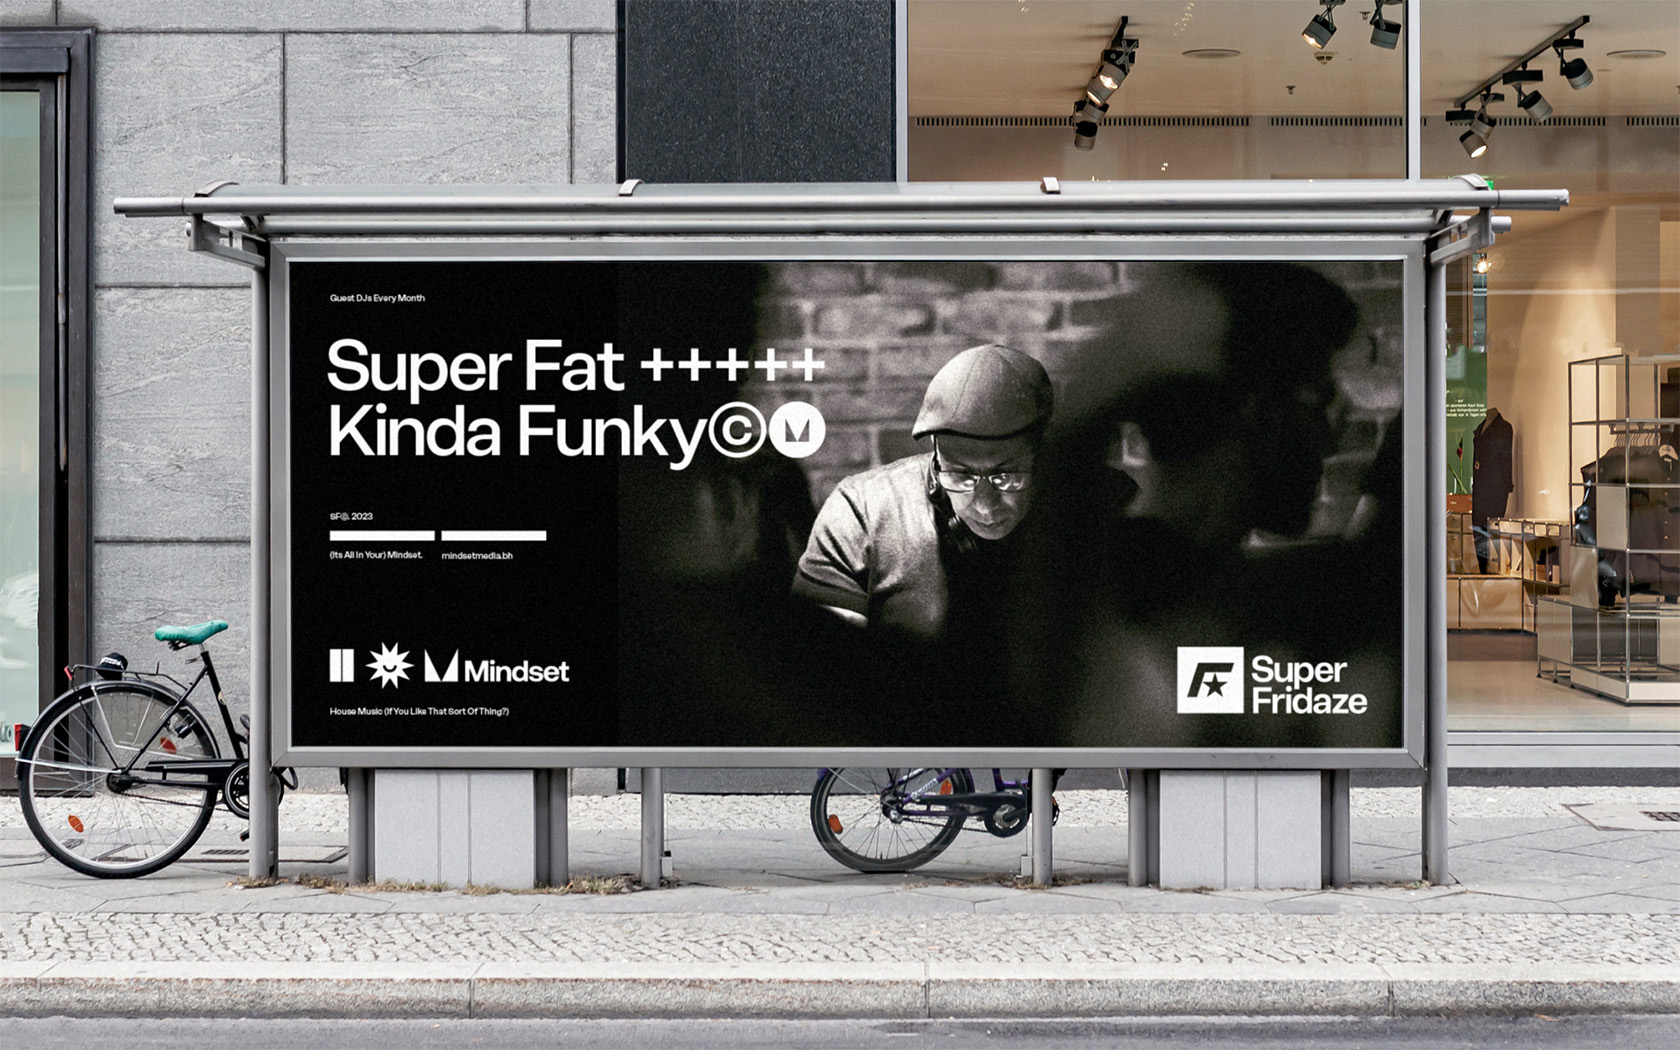 Super Fridaze. Billboard example